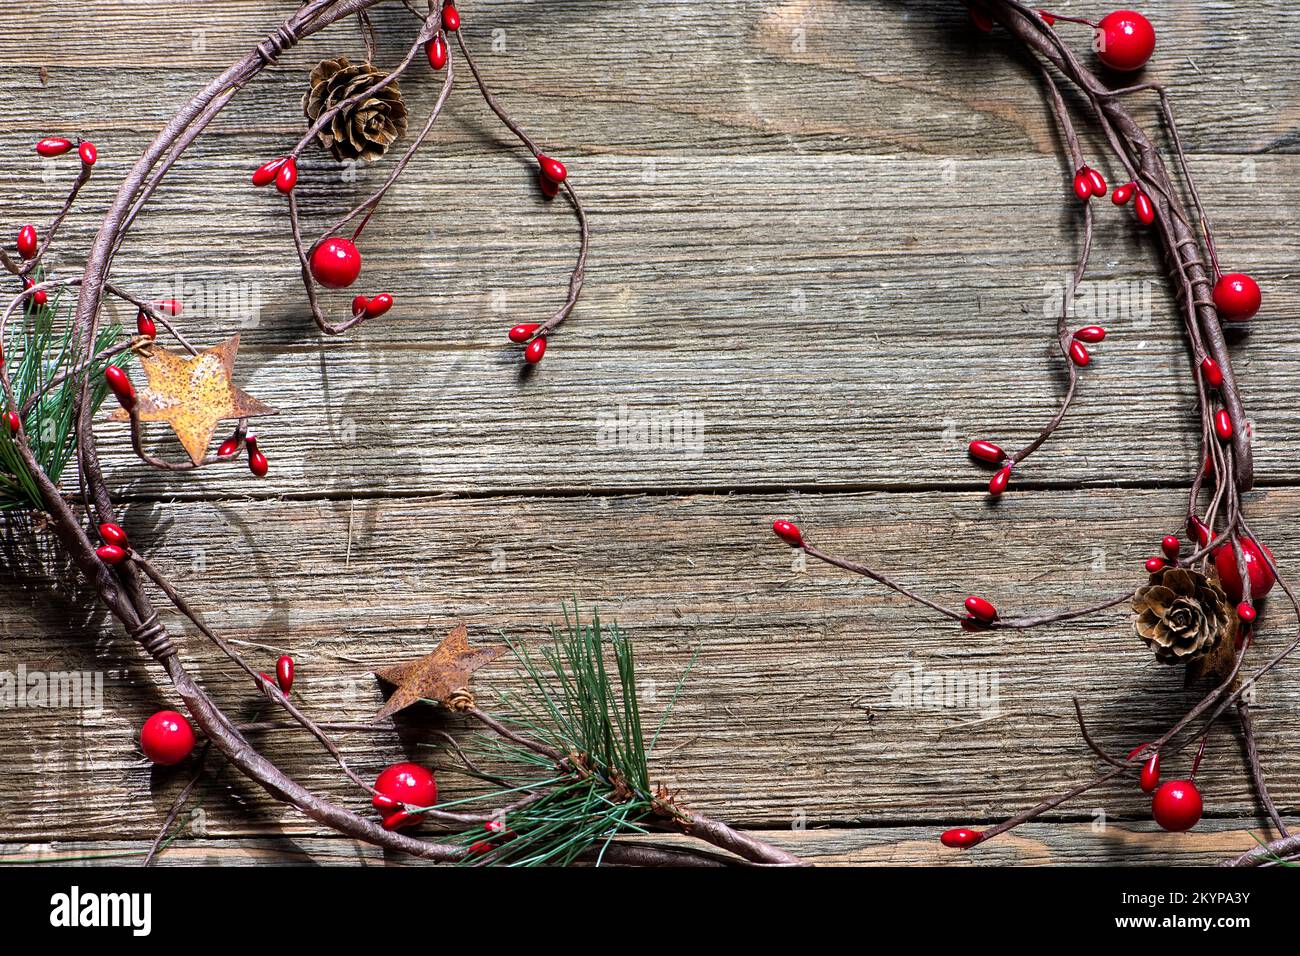 Vitigno tradizionale decorazione natalizia, stile casale, su sfondo ligneo, senza testo Foto Stock